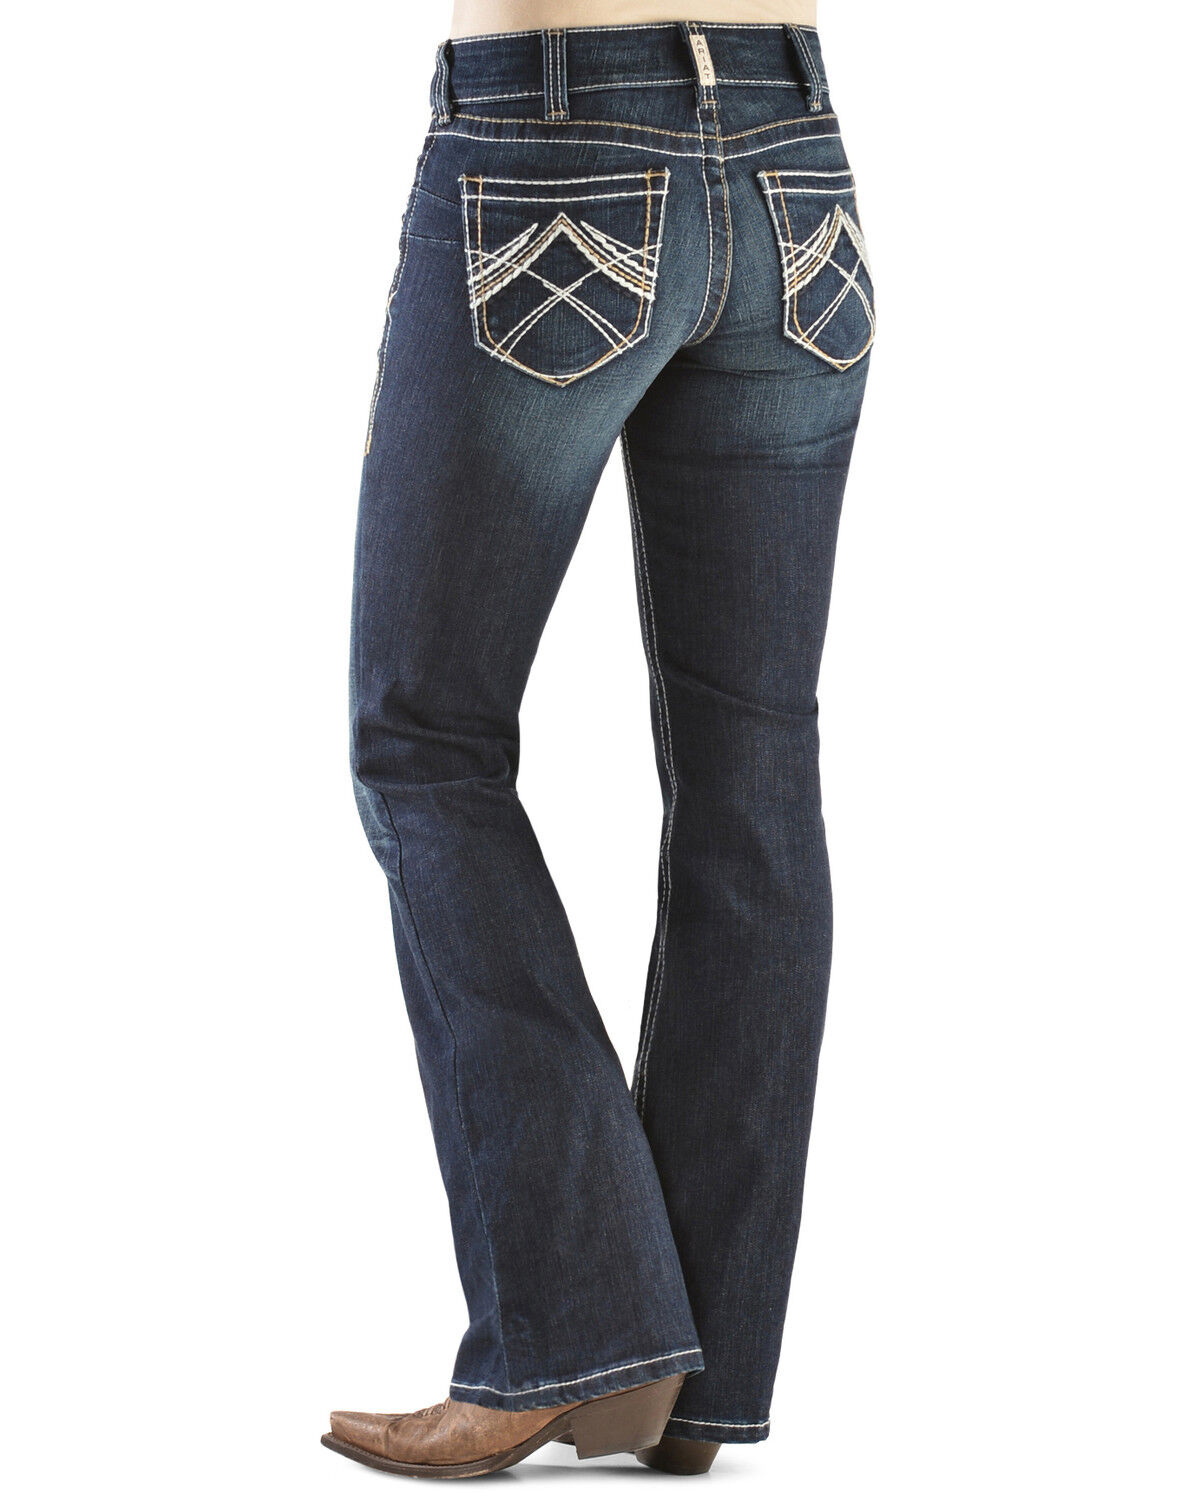 best women's jeans canada